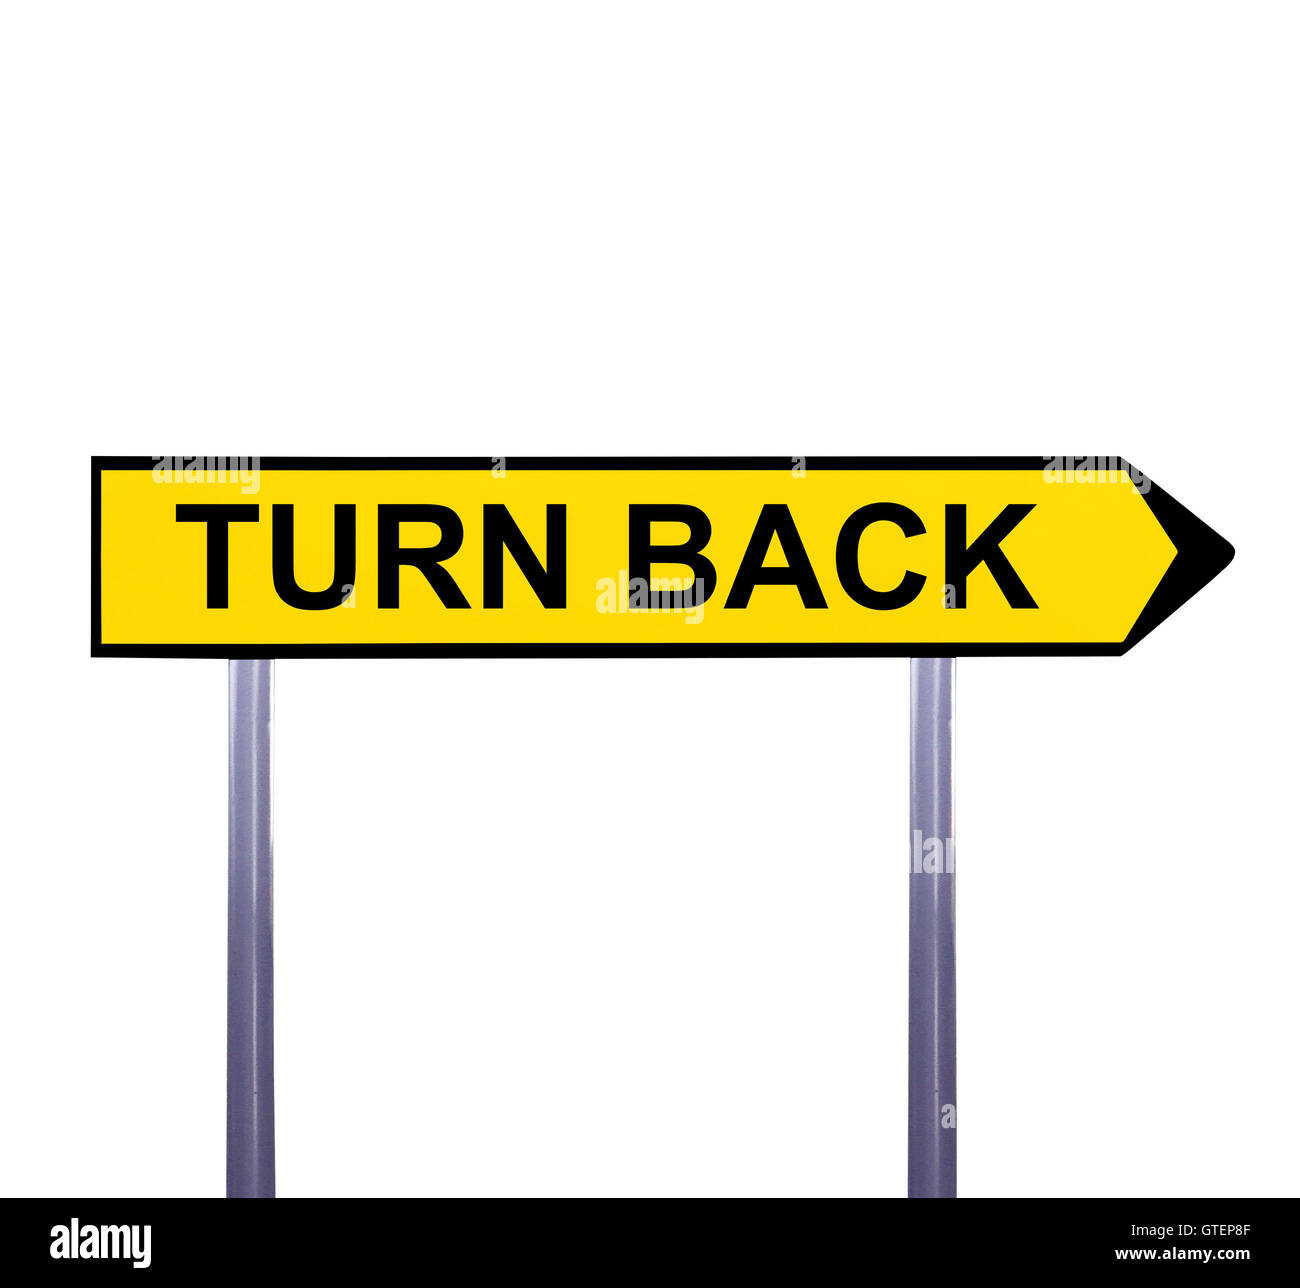 Turn my back